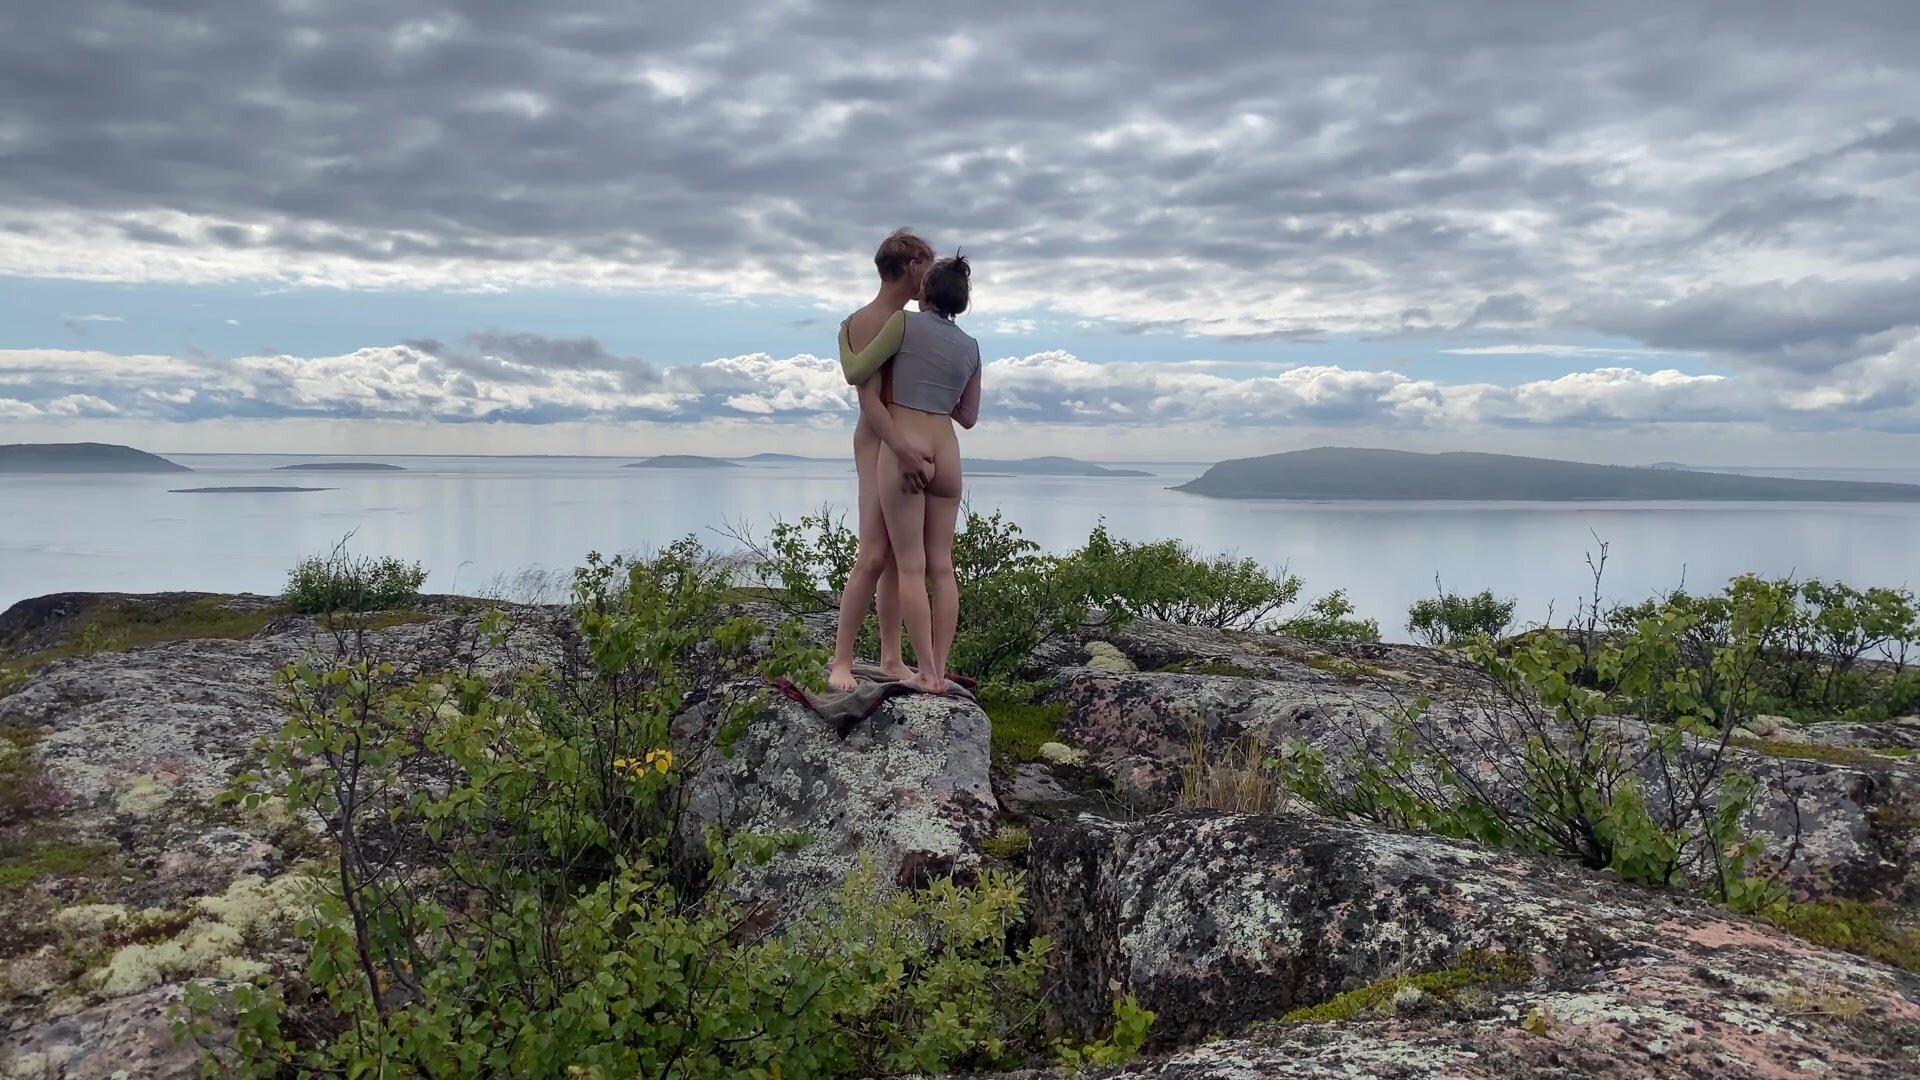 Remlic - Vi kom til ubeboede øer for at skyde smuk sex